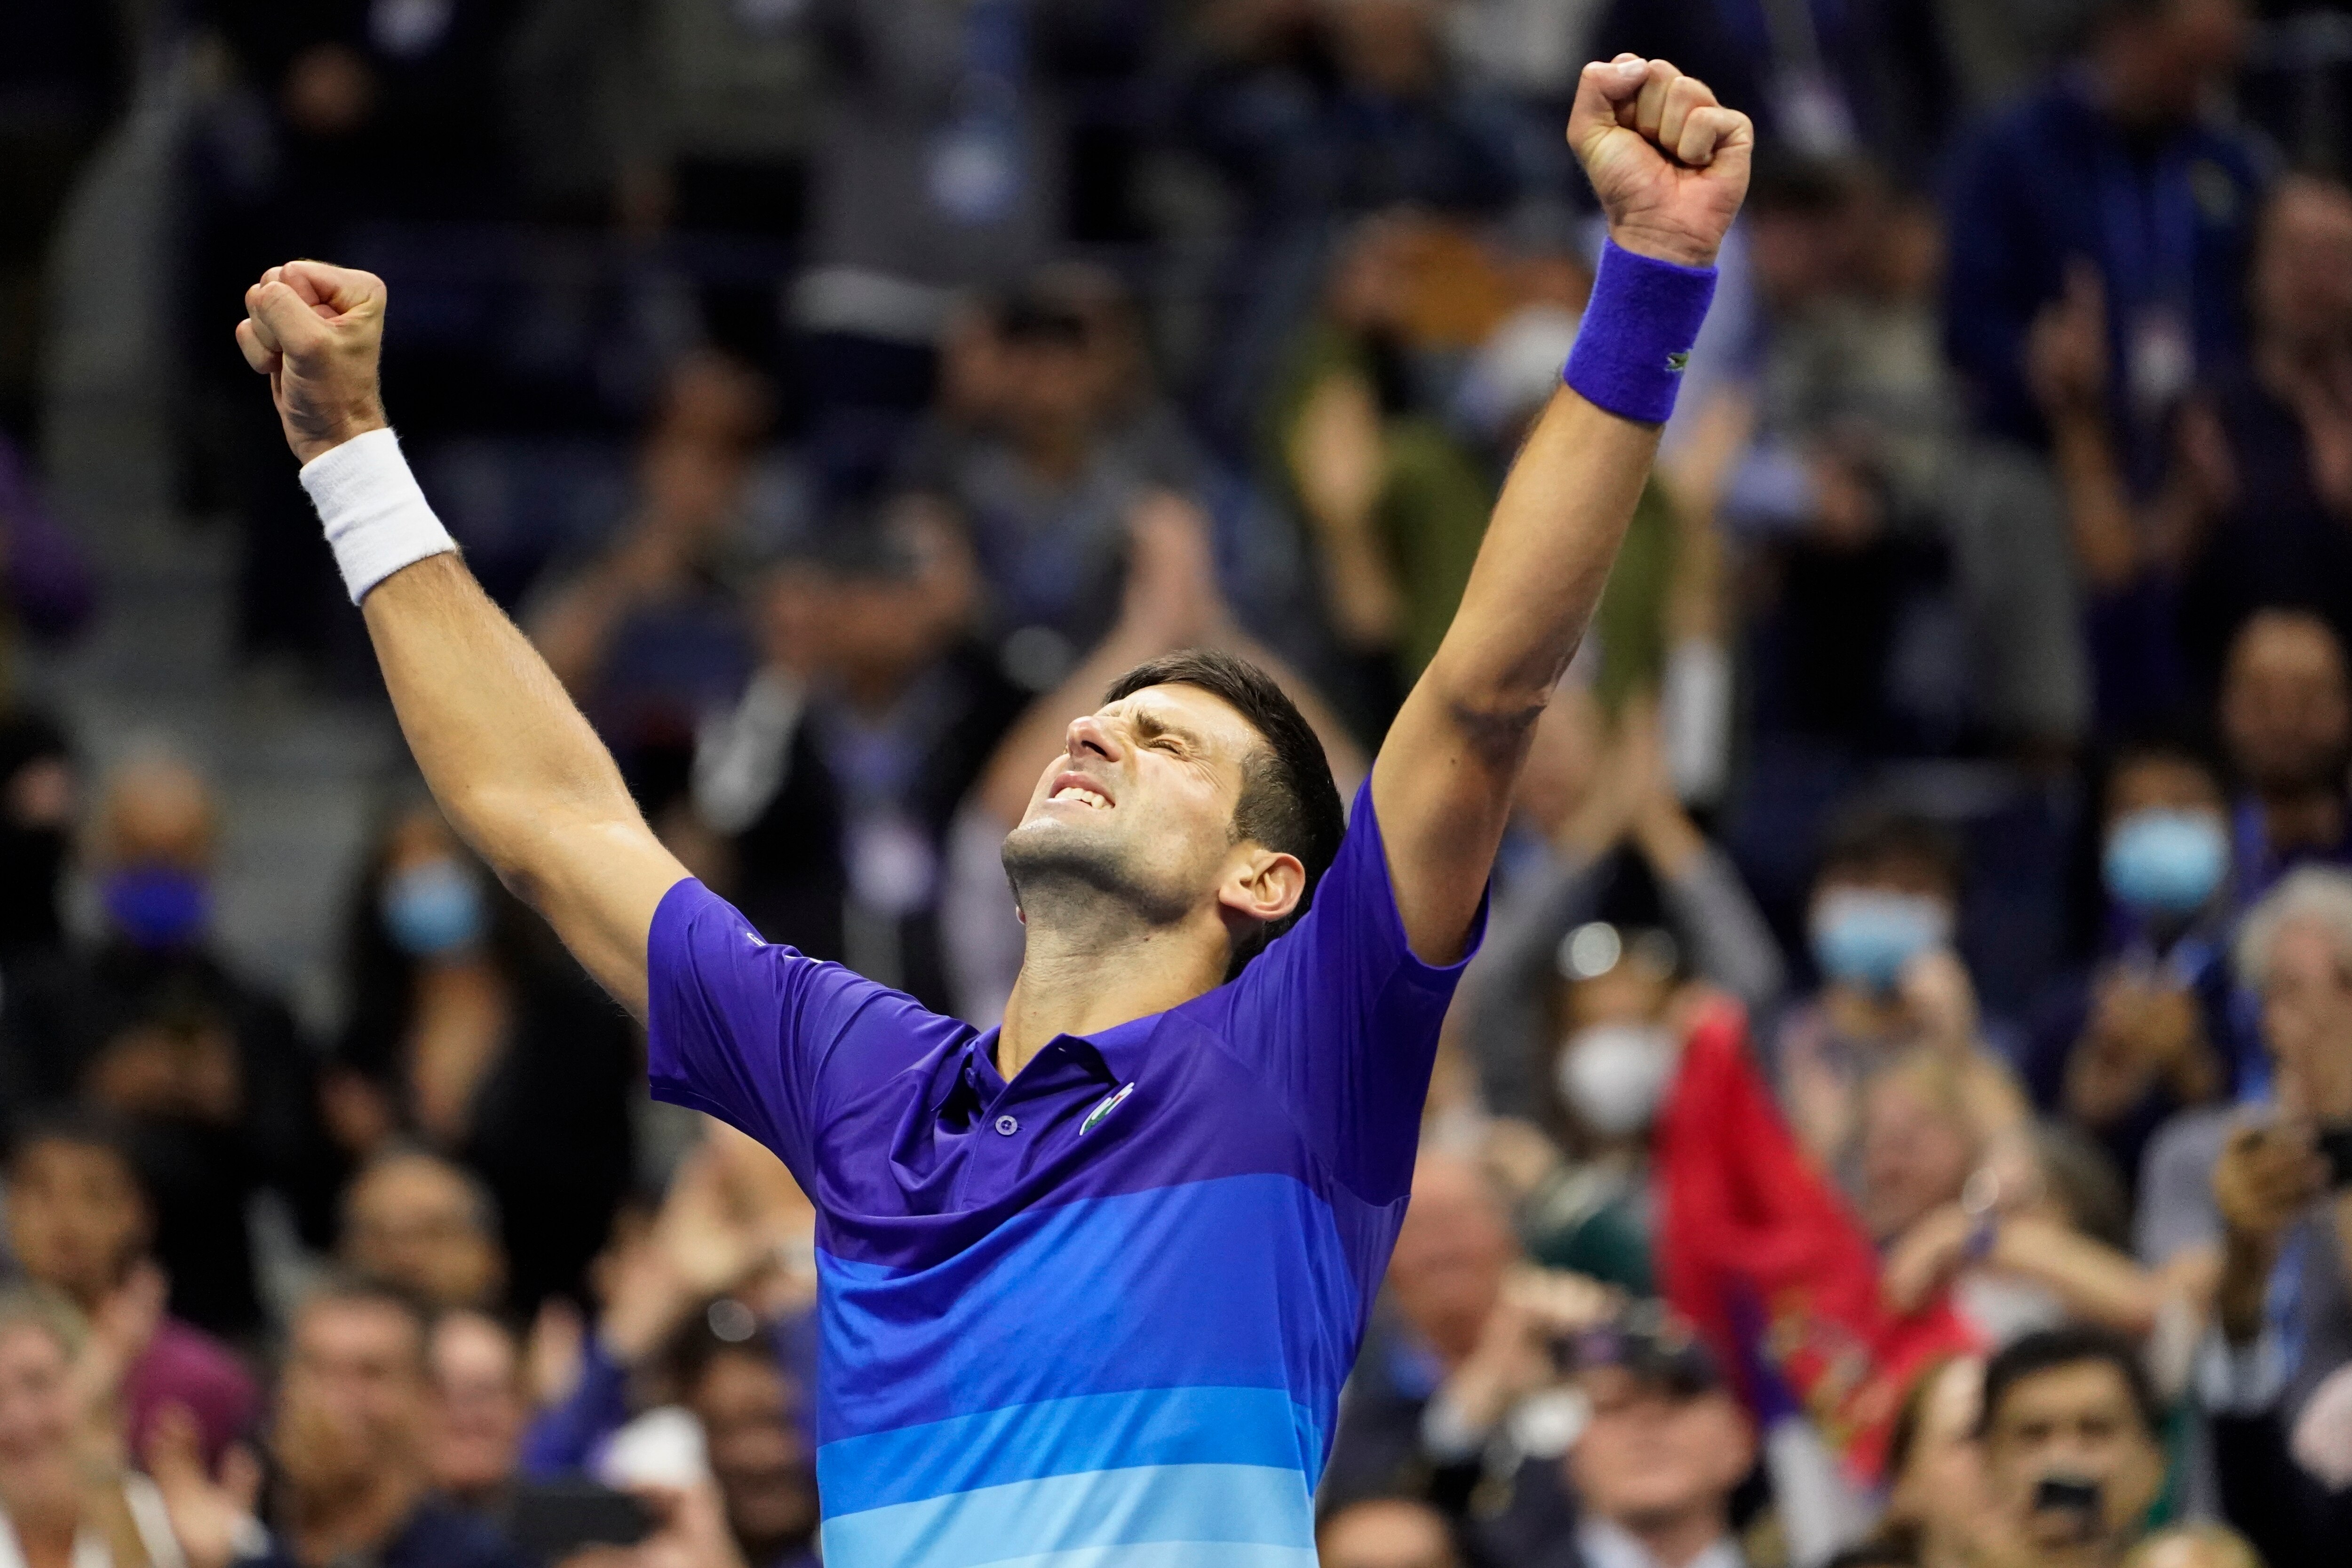 Novak Djokovic reacts after defeating Alexander Zverev in the US Open semifinals.